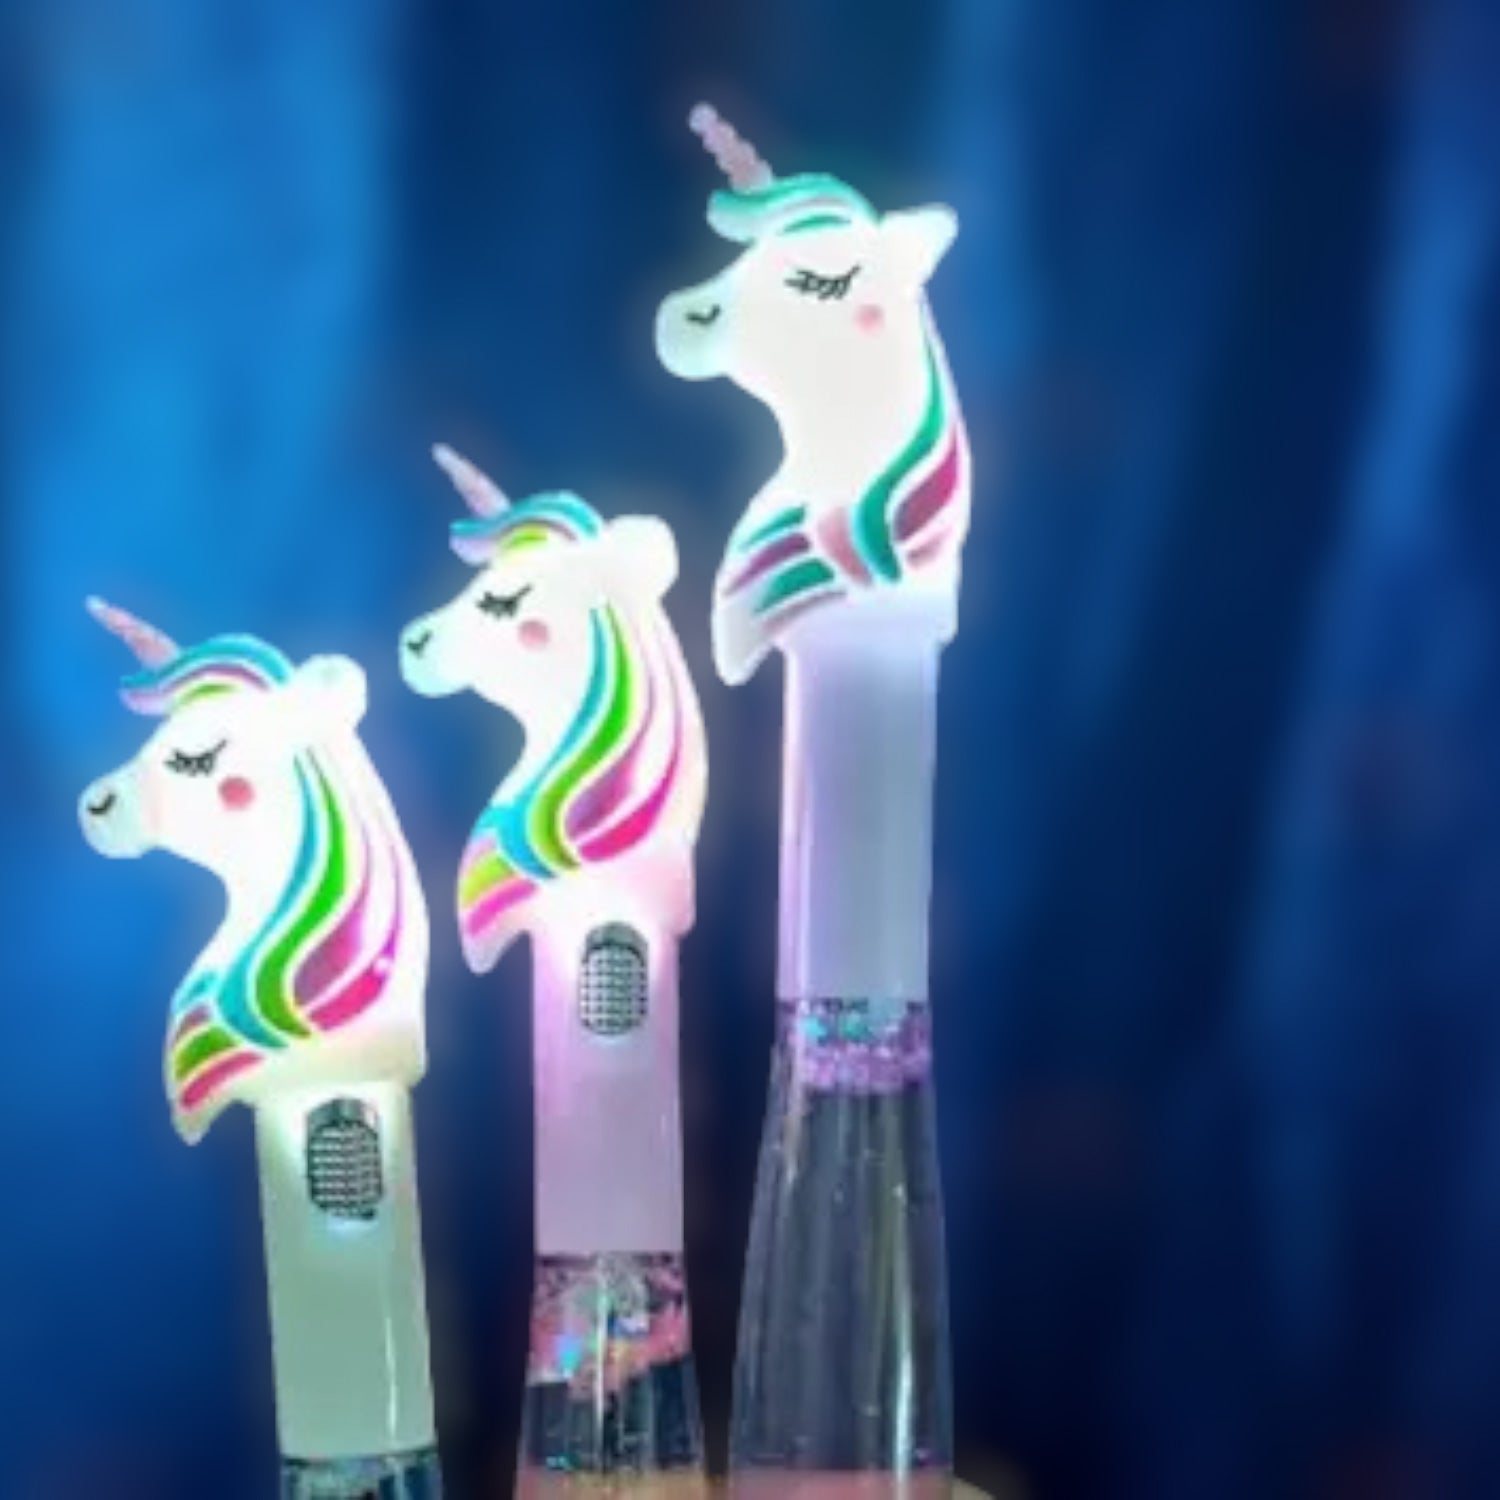 Ball Pens - Unicorn Design | Ballpoint Pen With Led Light & Glitter - for Kids, Girls, Boys, Students, School, Birthday Gift & Return Gifts - Apkamart